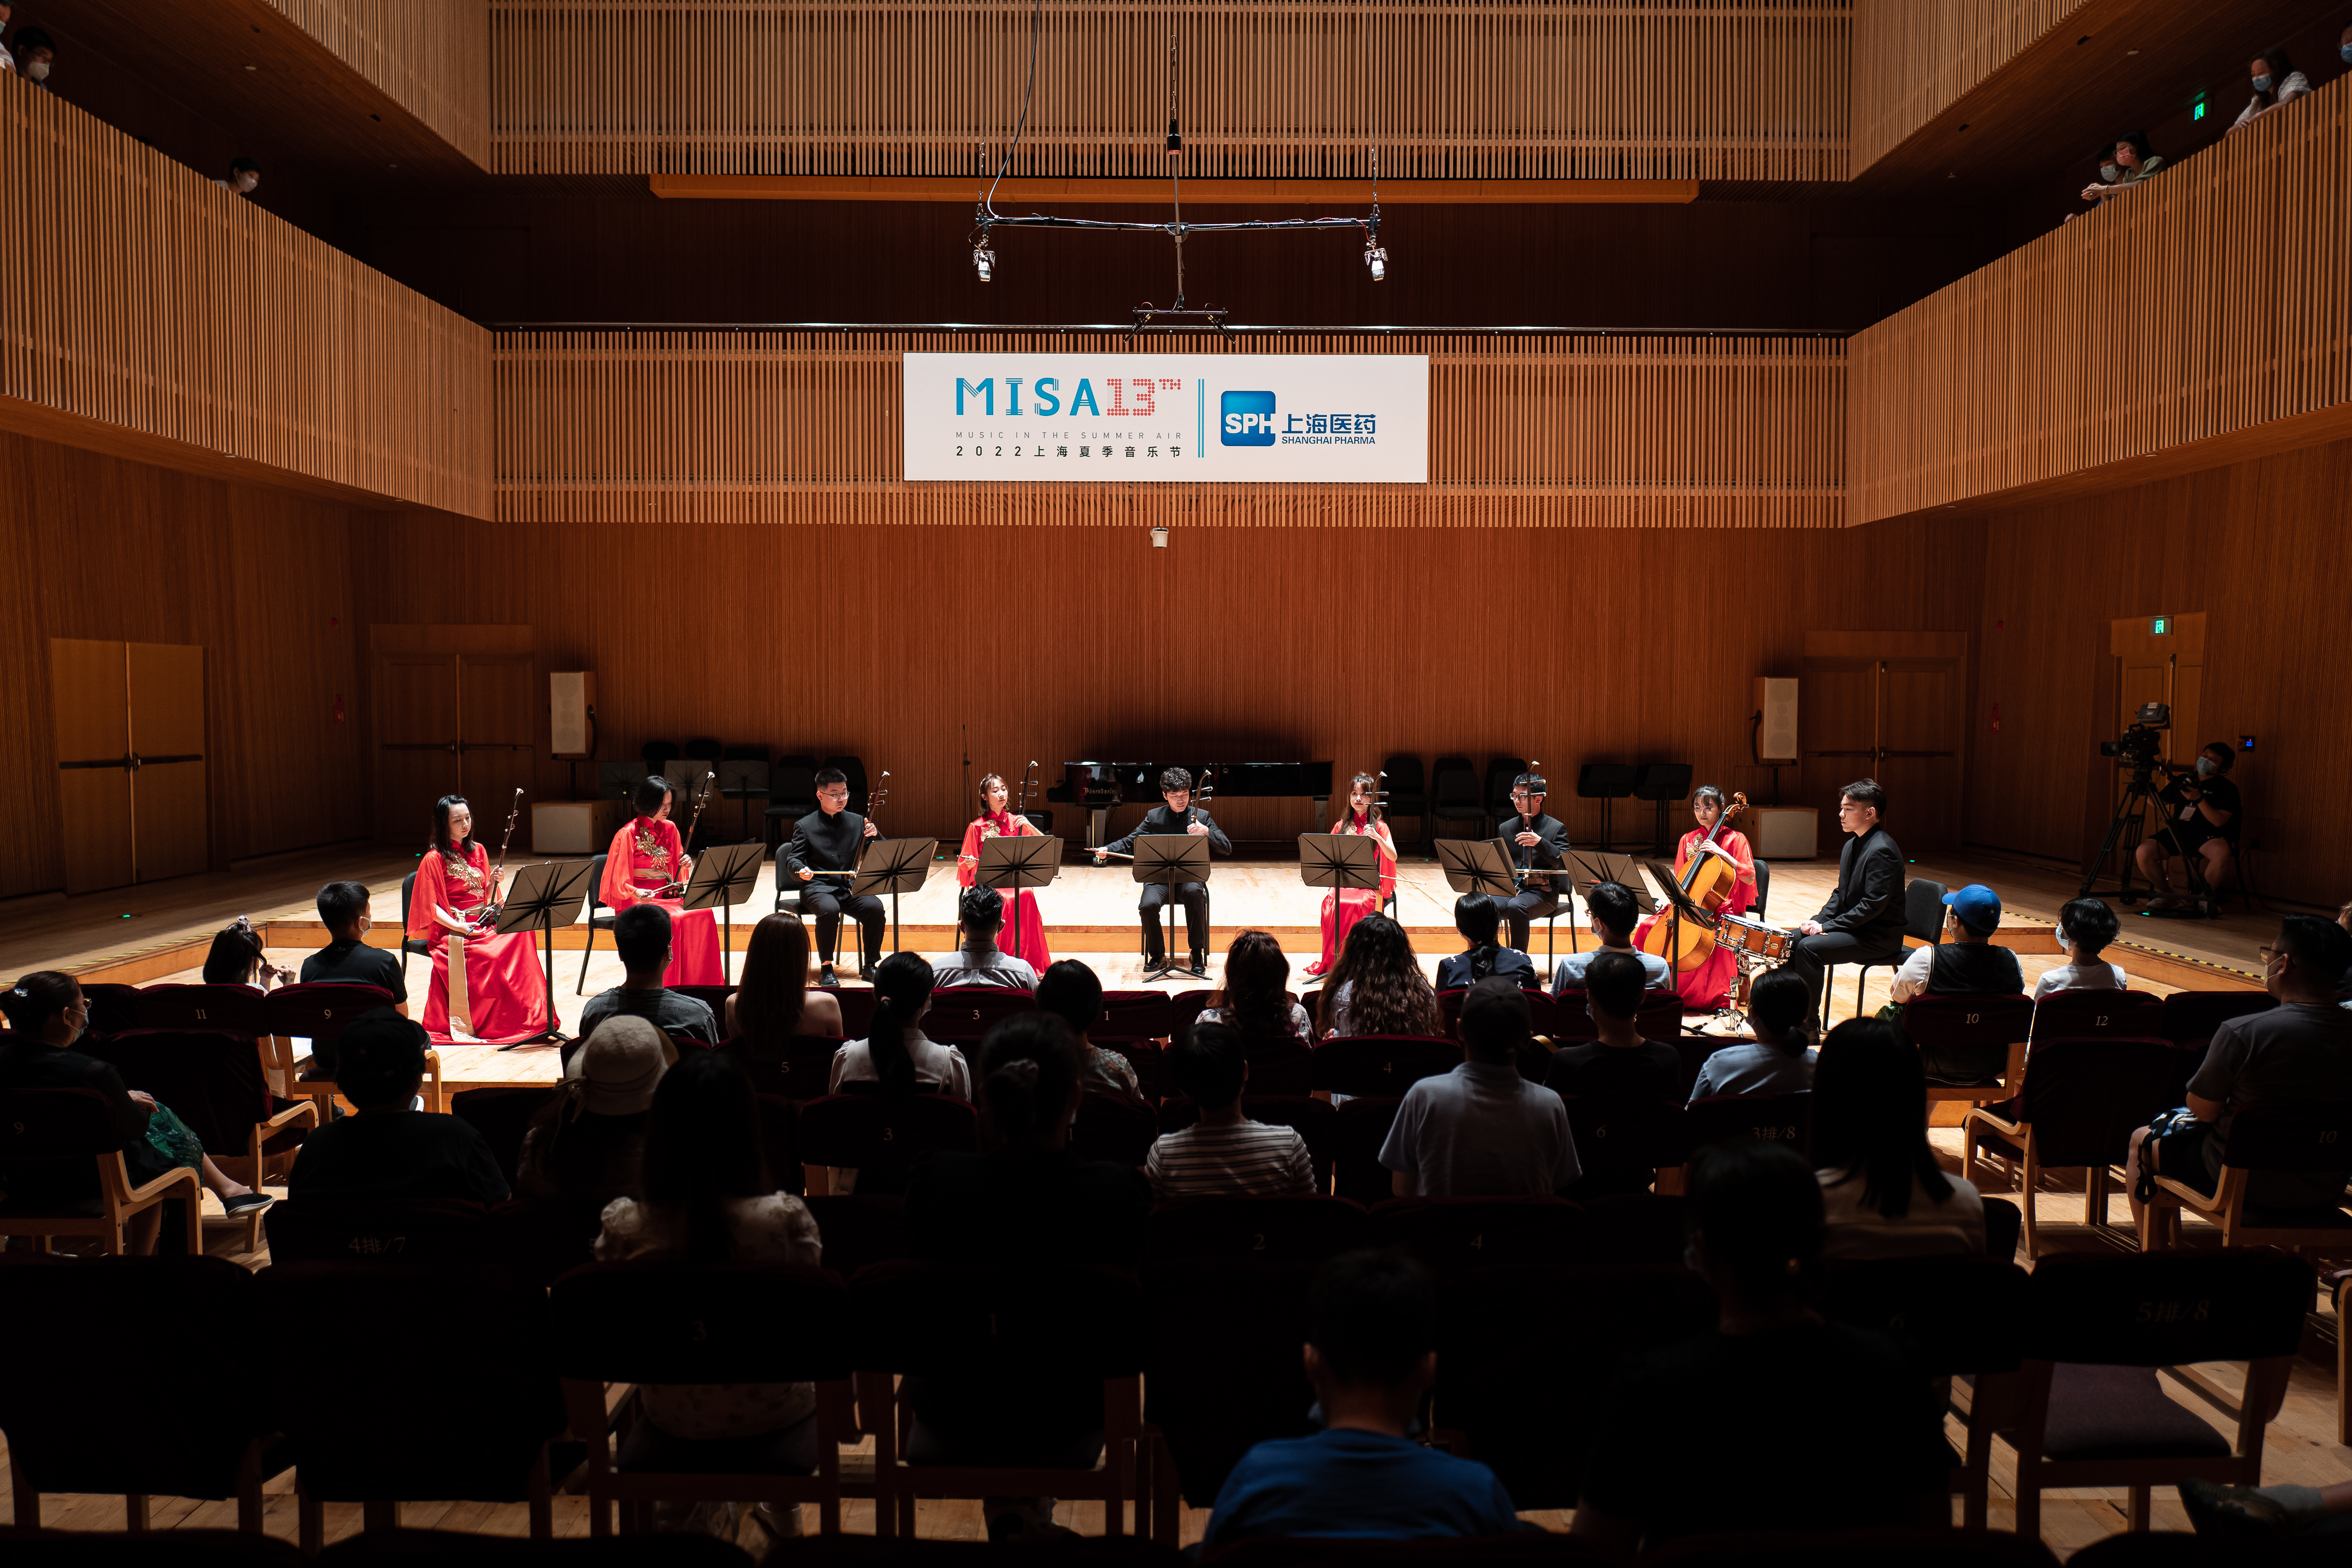 上海财经大学学生民乐团 弦乐重奏《光明行》、《牧童与胡琴》.JPG